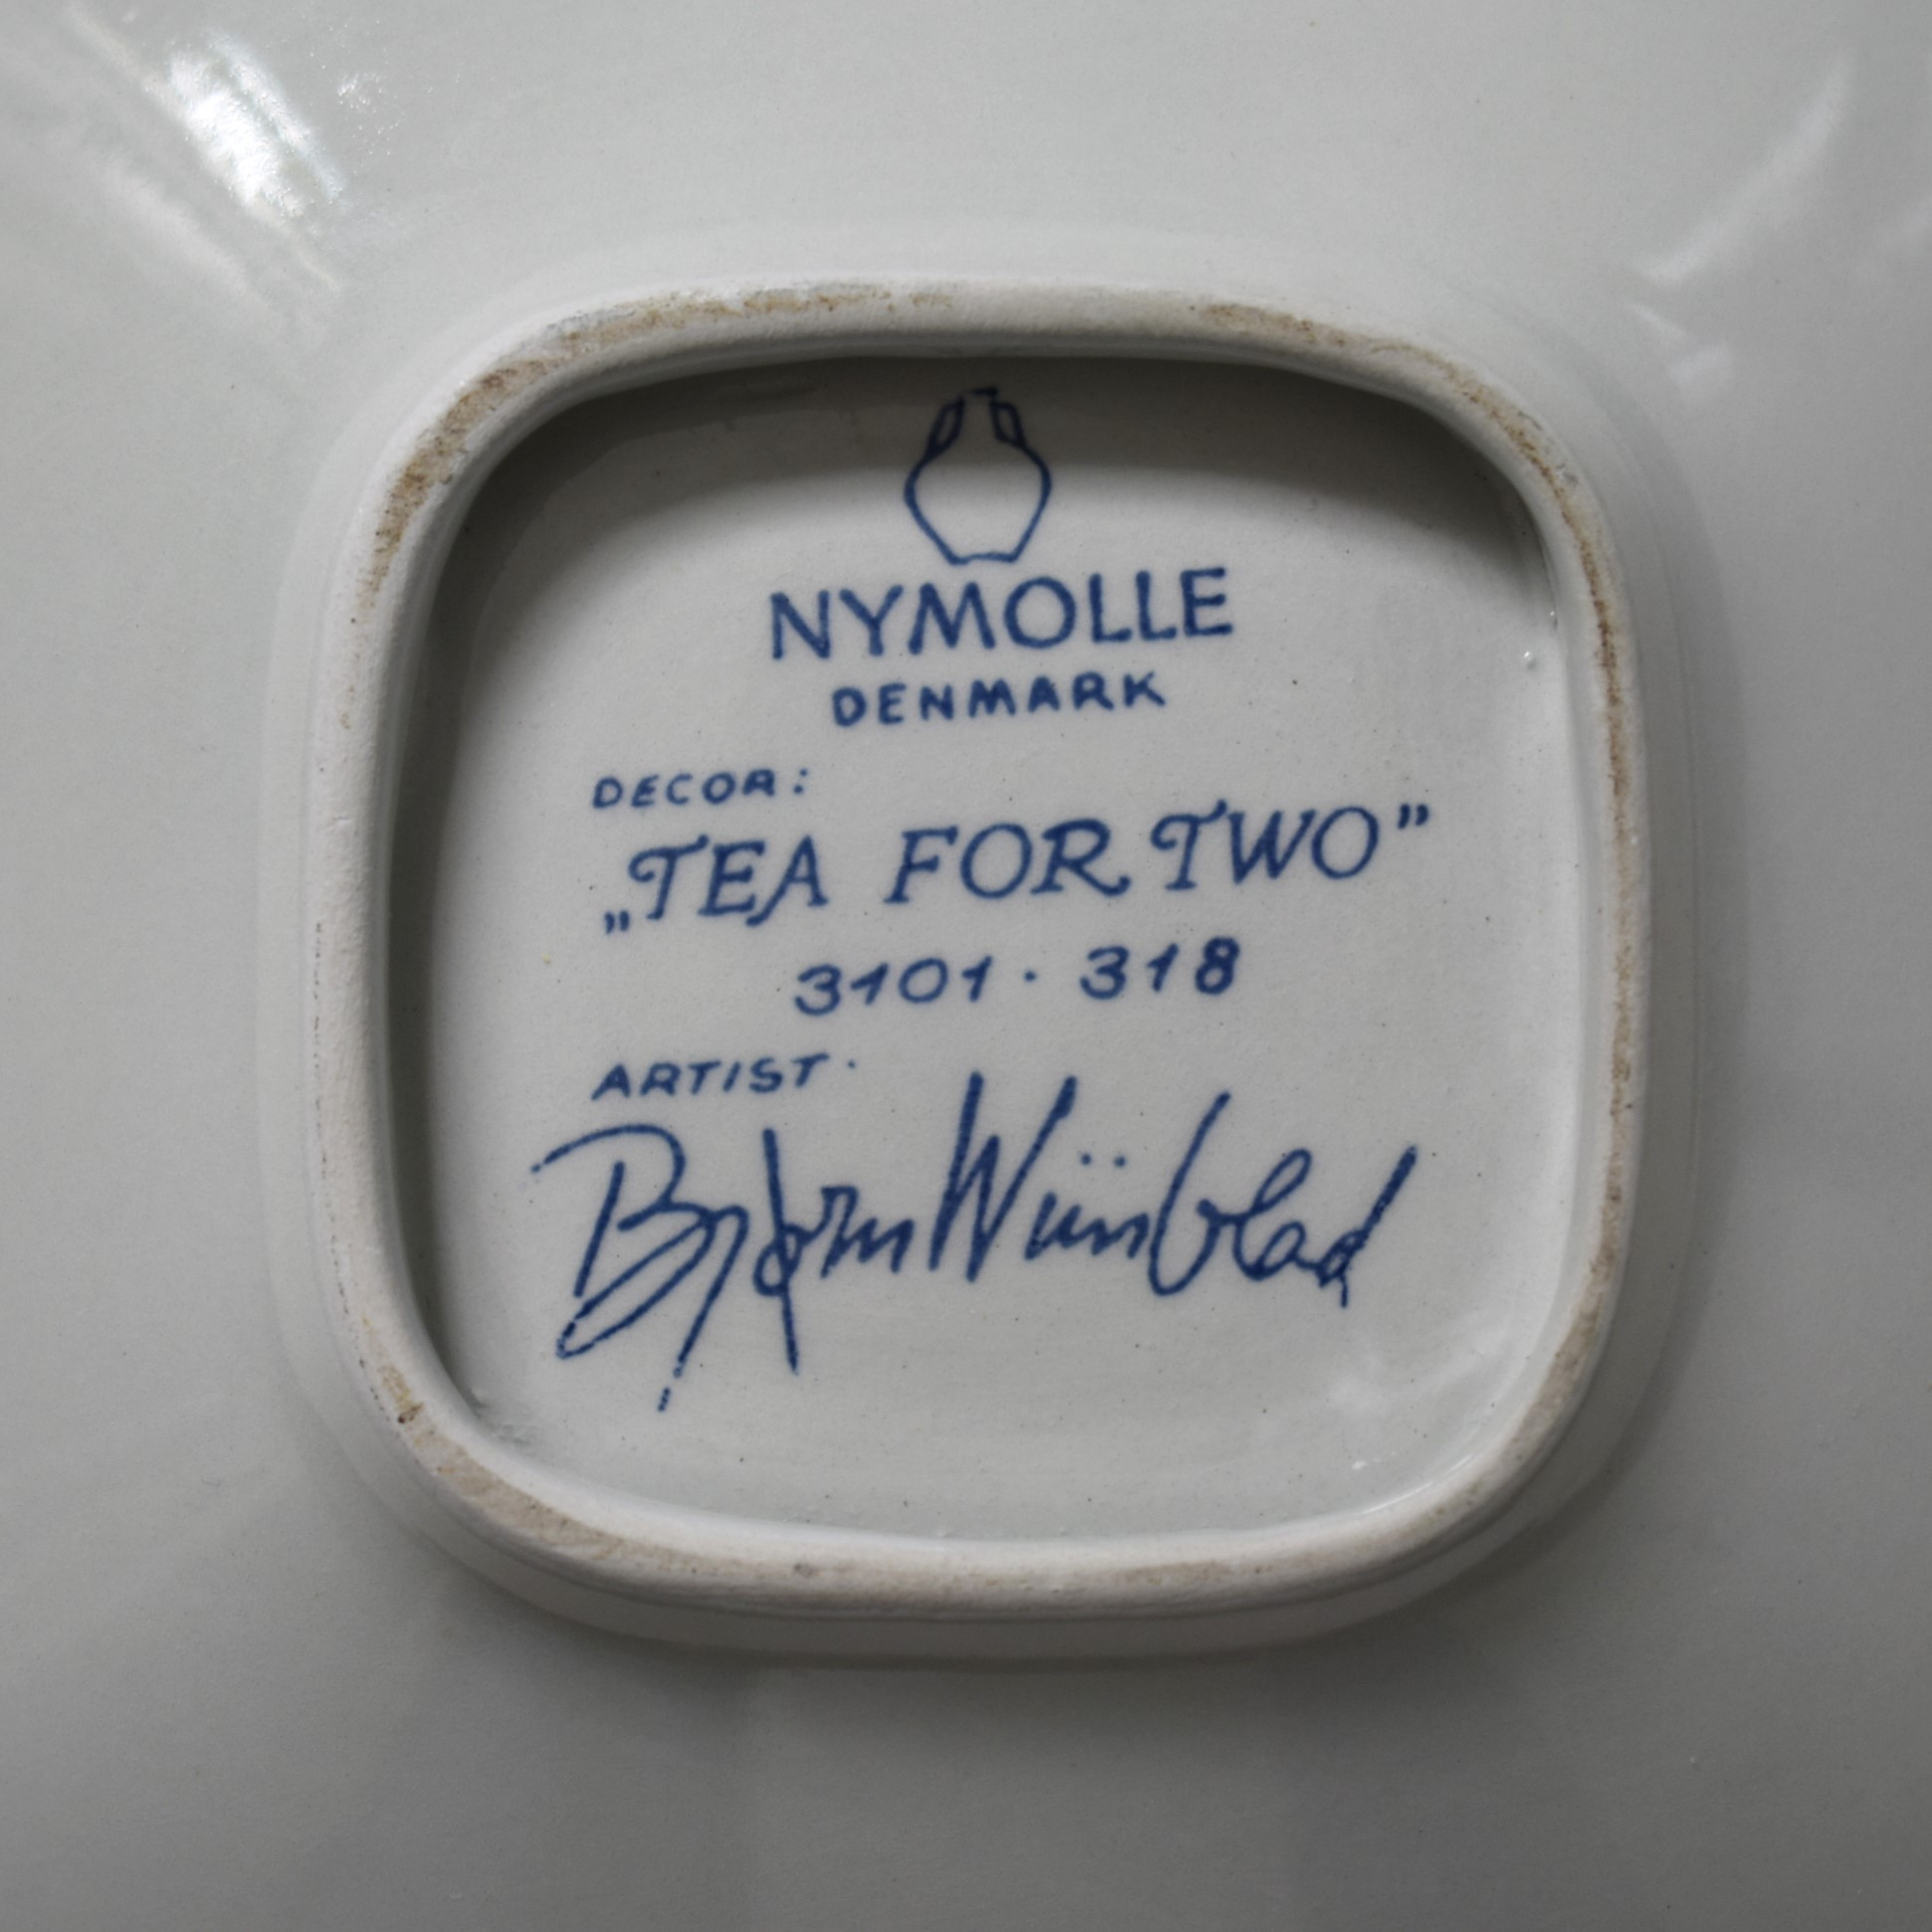 Tea for two・絵皿 / Bjorn Wiinblad・ビヨン ヴィンブラッド / Nymolle・二モール